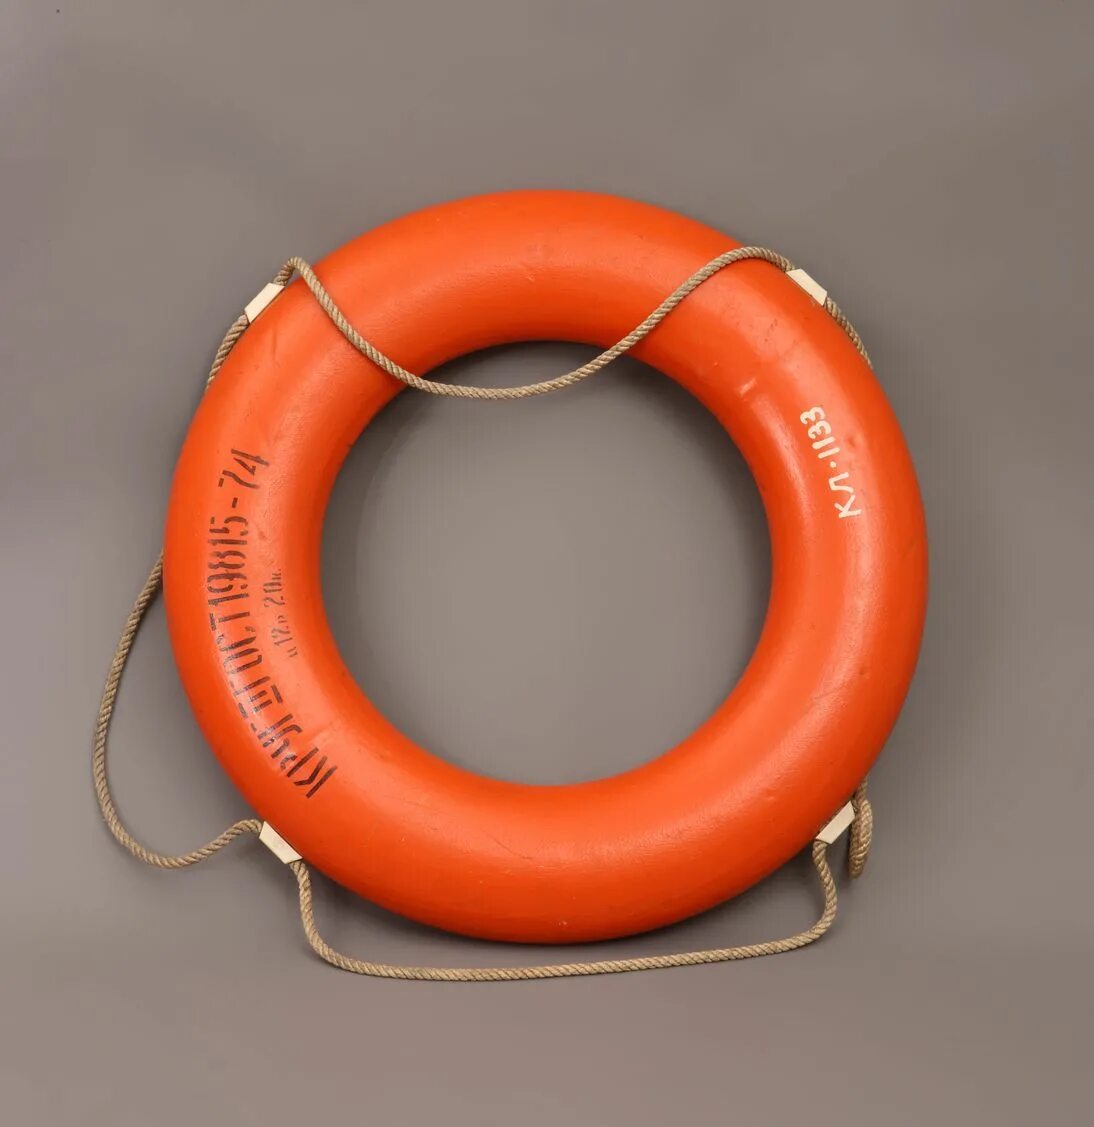 Купить в москве спасательный. Спасательный круг. Диаметр спасательного круга. Спасательный круг оранжевый. Спасательный круг Размеры.